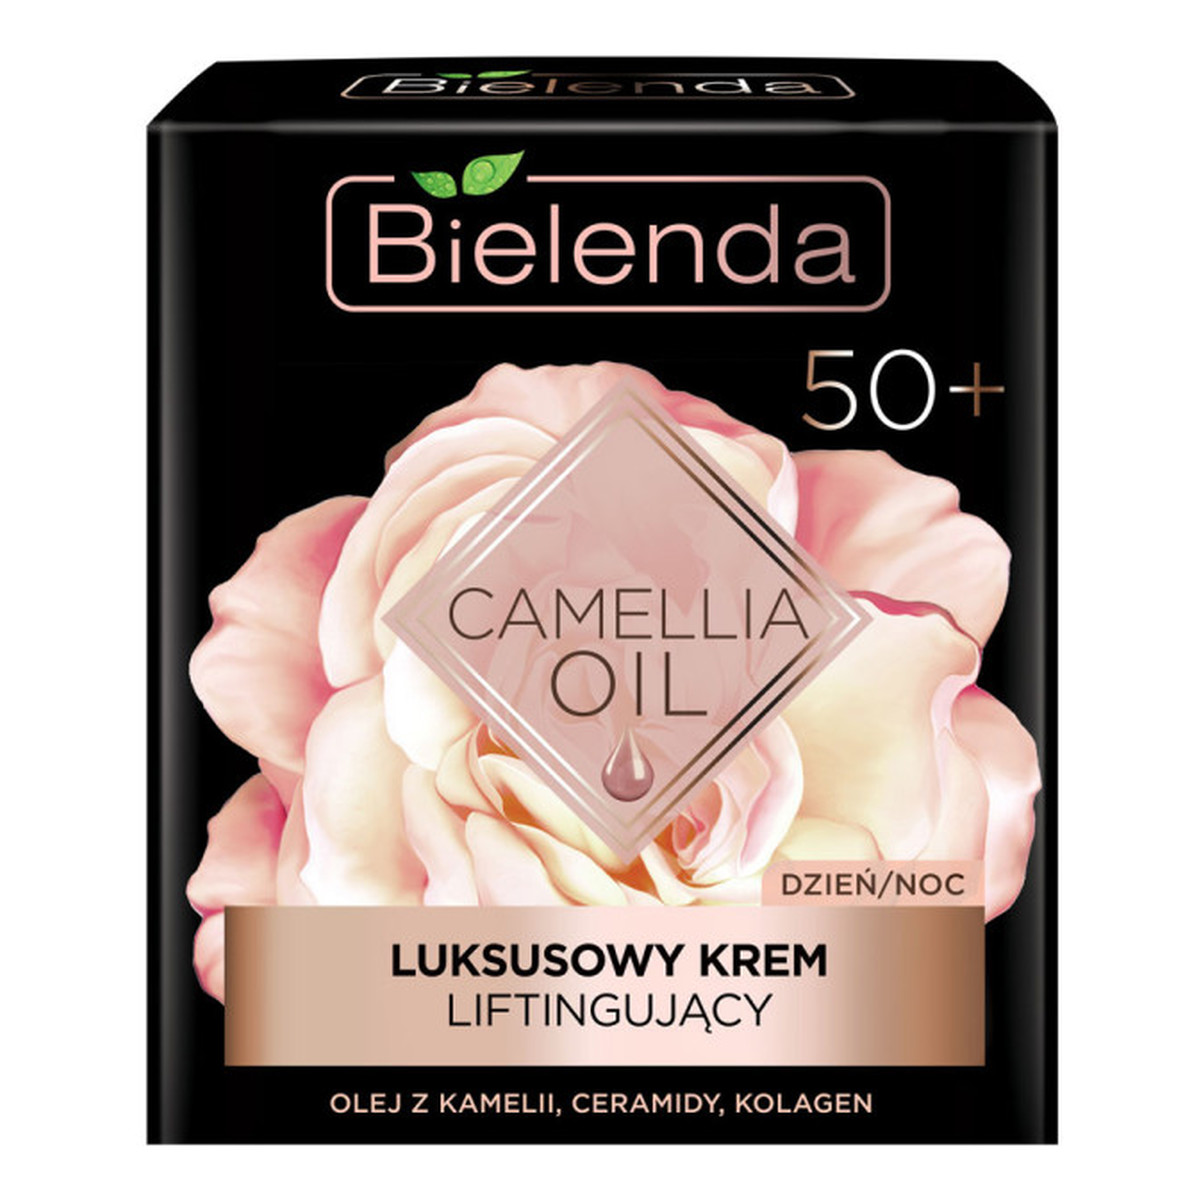 Bielenda Camellia Oil 50+ Luksusowy Krem liftingujący na dzień i noc 50ml